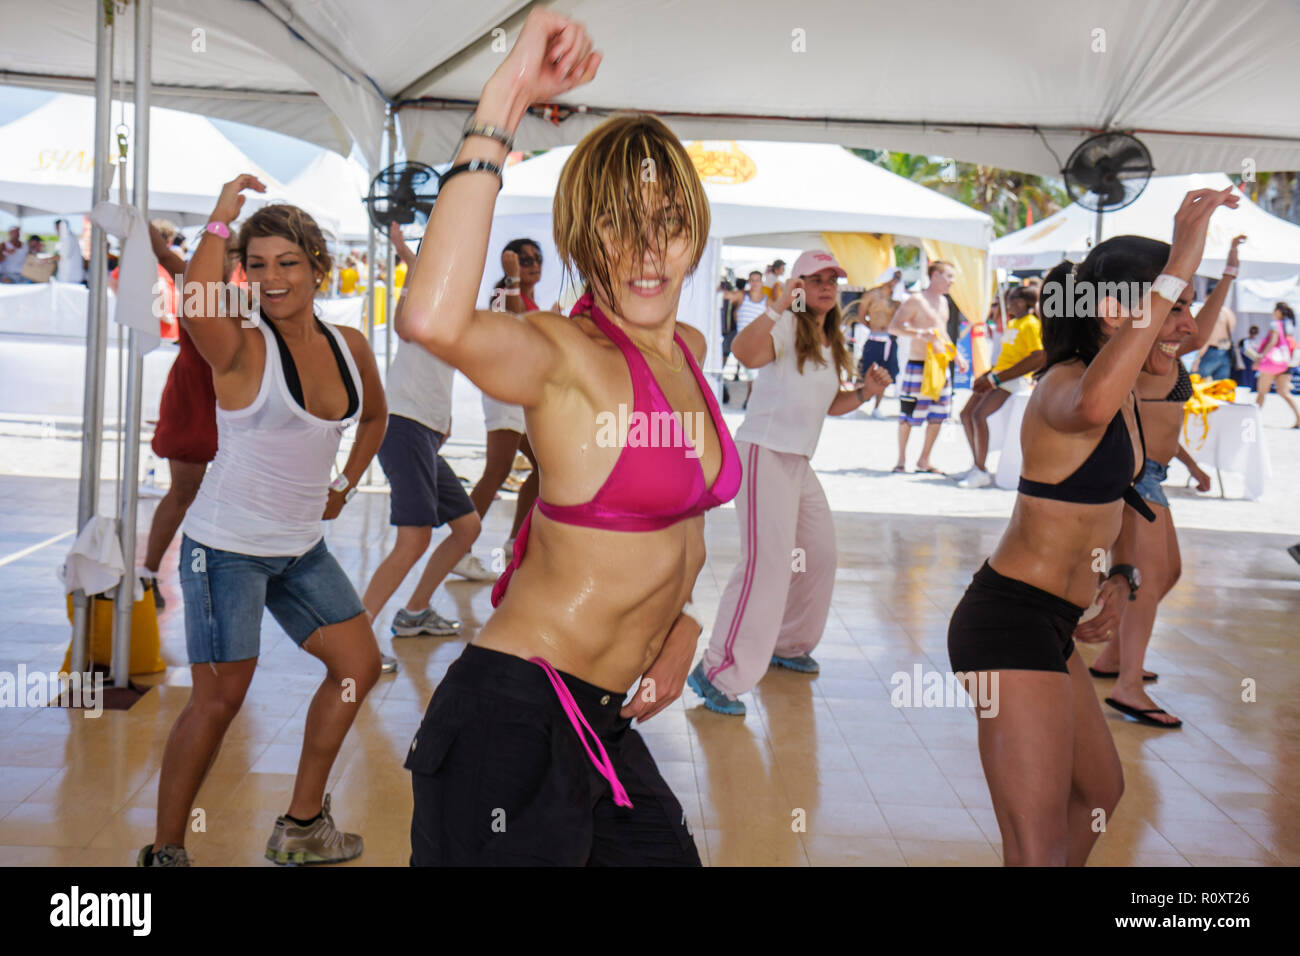 Miami Beach Florida, lezioni di fitness esercitando la fusione latina Zumba, donne ispaniche femminili, allenamento cardio che sudano sessione aerobica allenatore di gruppo Foto Stock